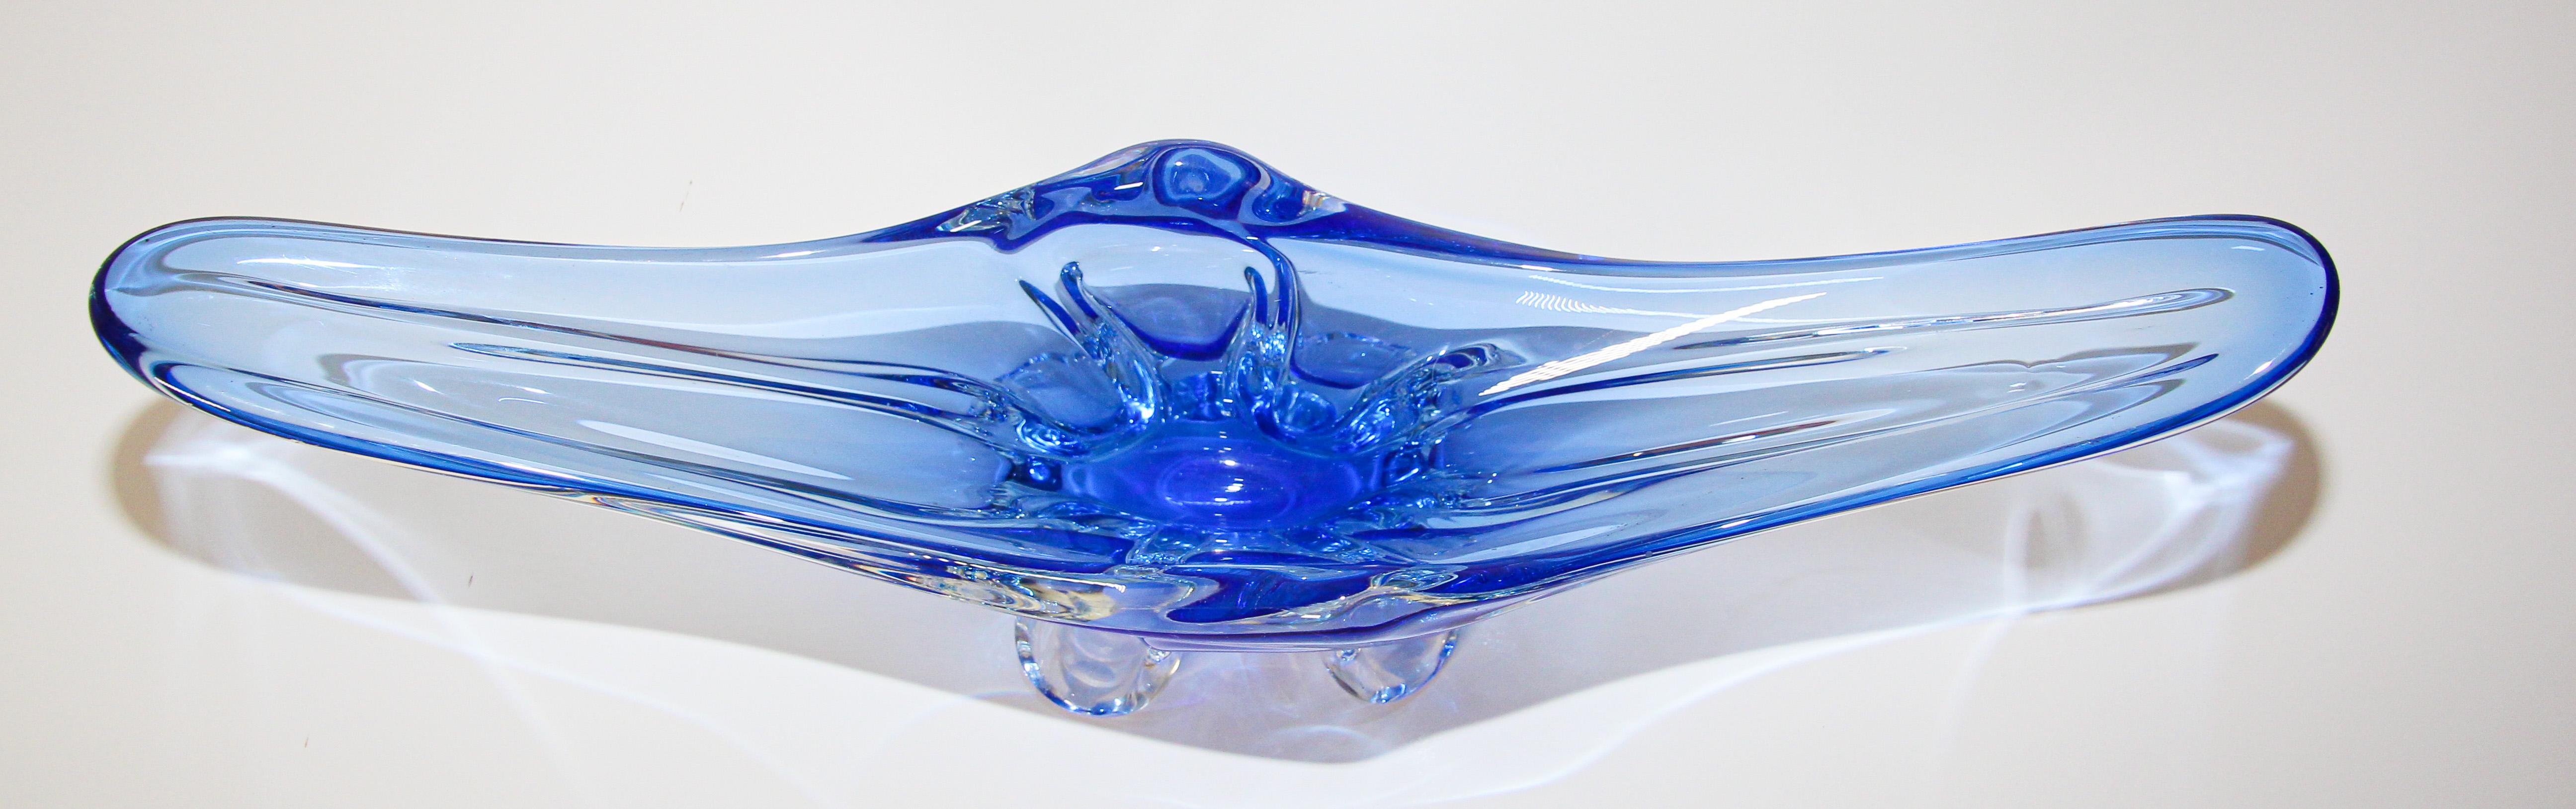 blue murano glass bowl